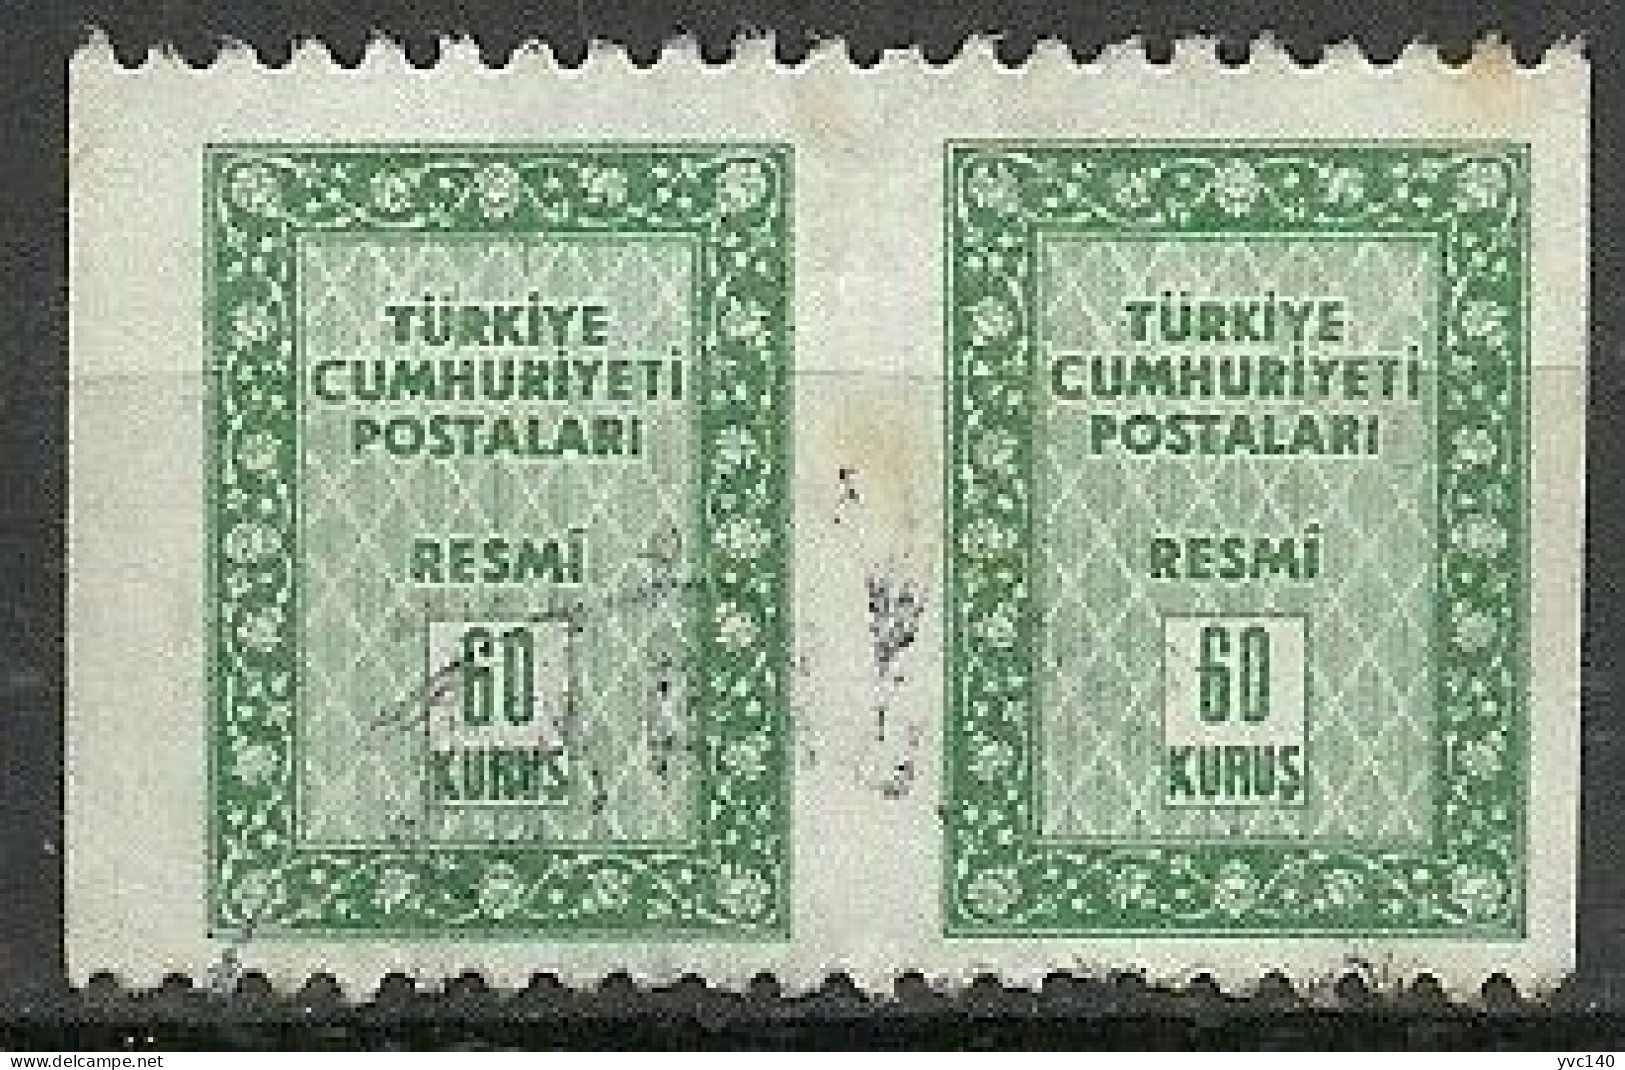 Turkey; 1960 Official Stamp 60 K. ERROR "Partially  Imperf." - Dienstzegels